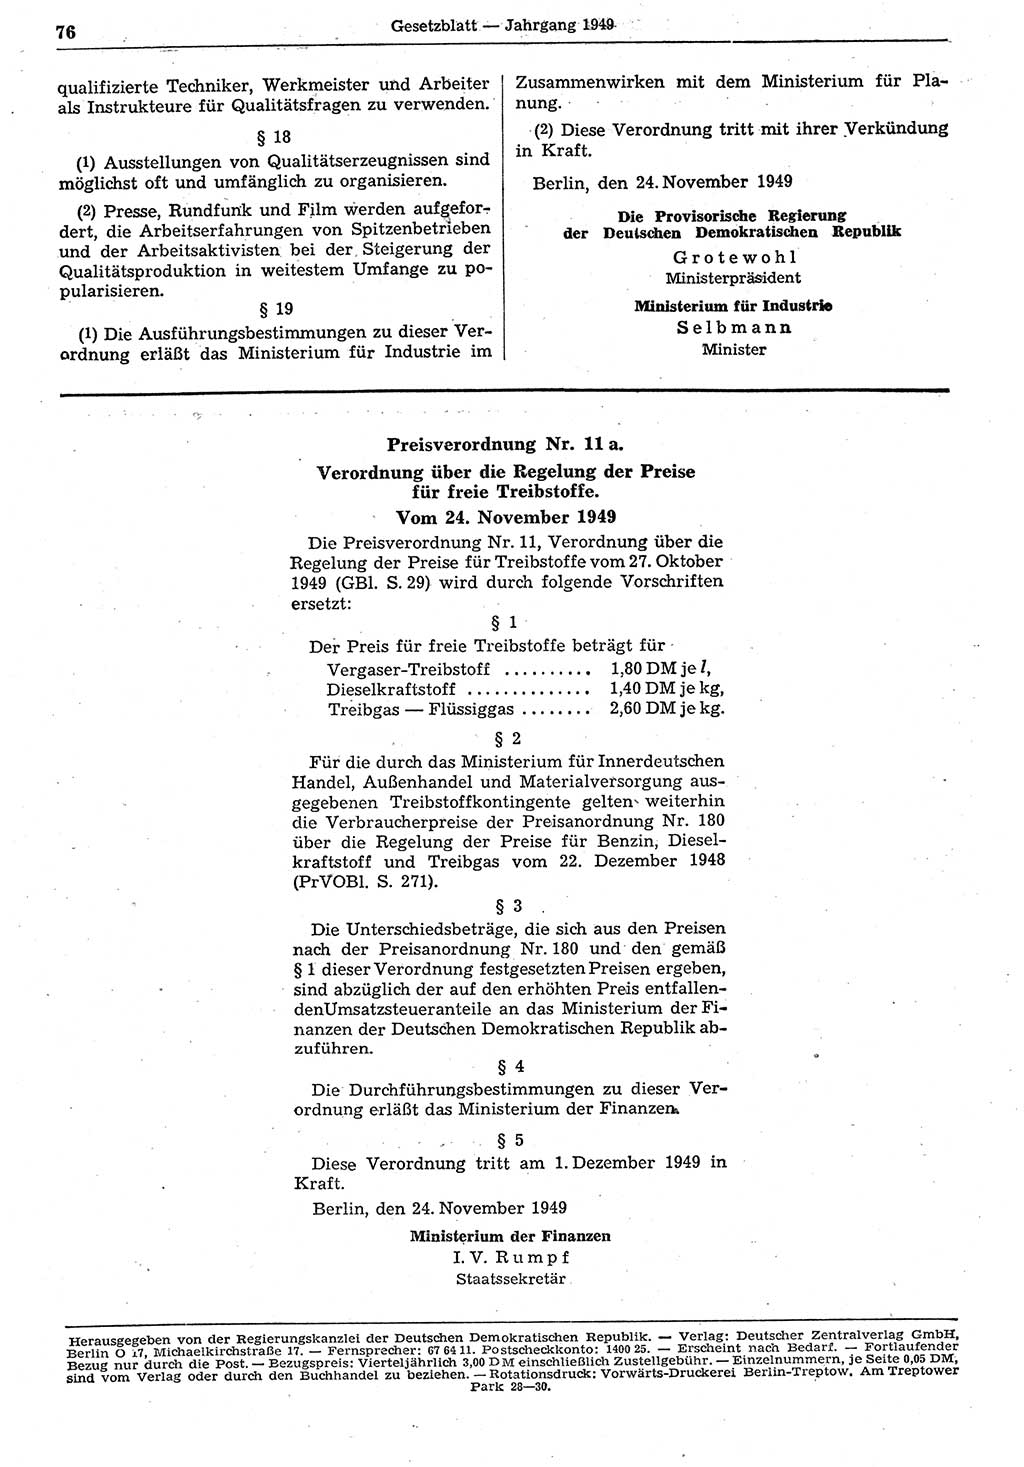 Gesetzblatt (GBl.) der Deutschen Demokratischen Republik (DDR) 1949, Seite 76 (GBl. DDR 1949, S. 76)